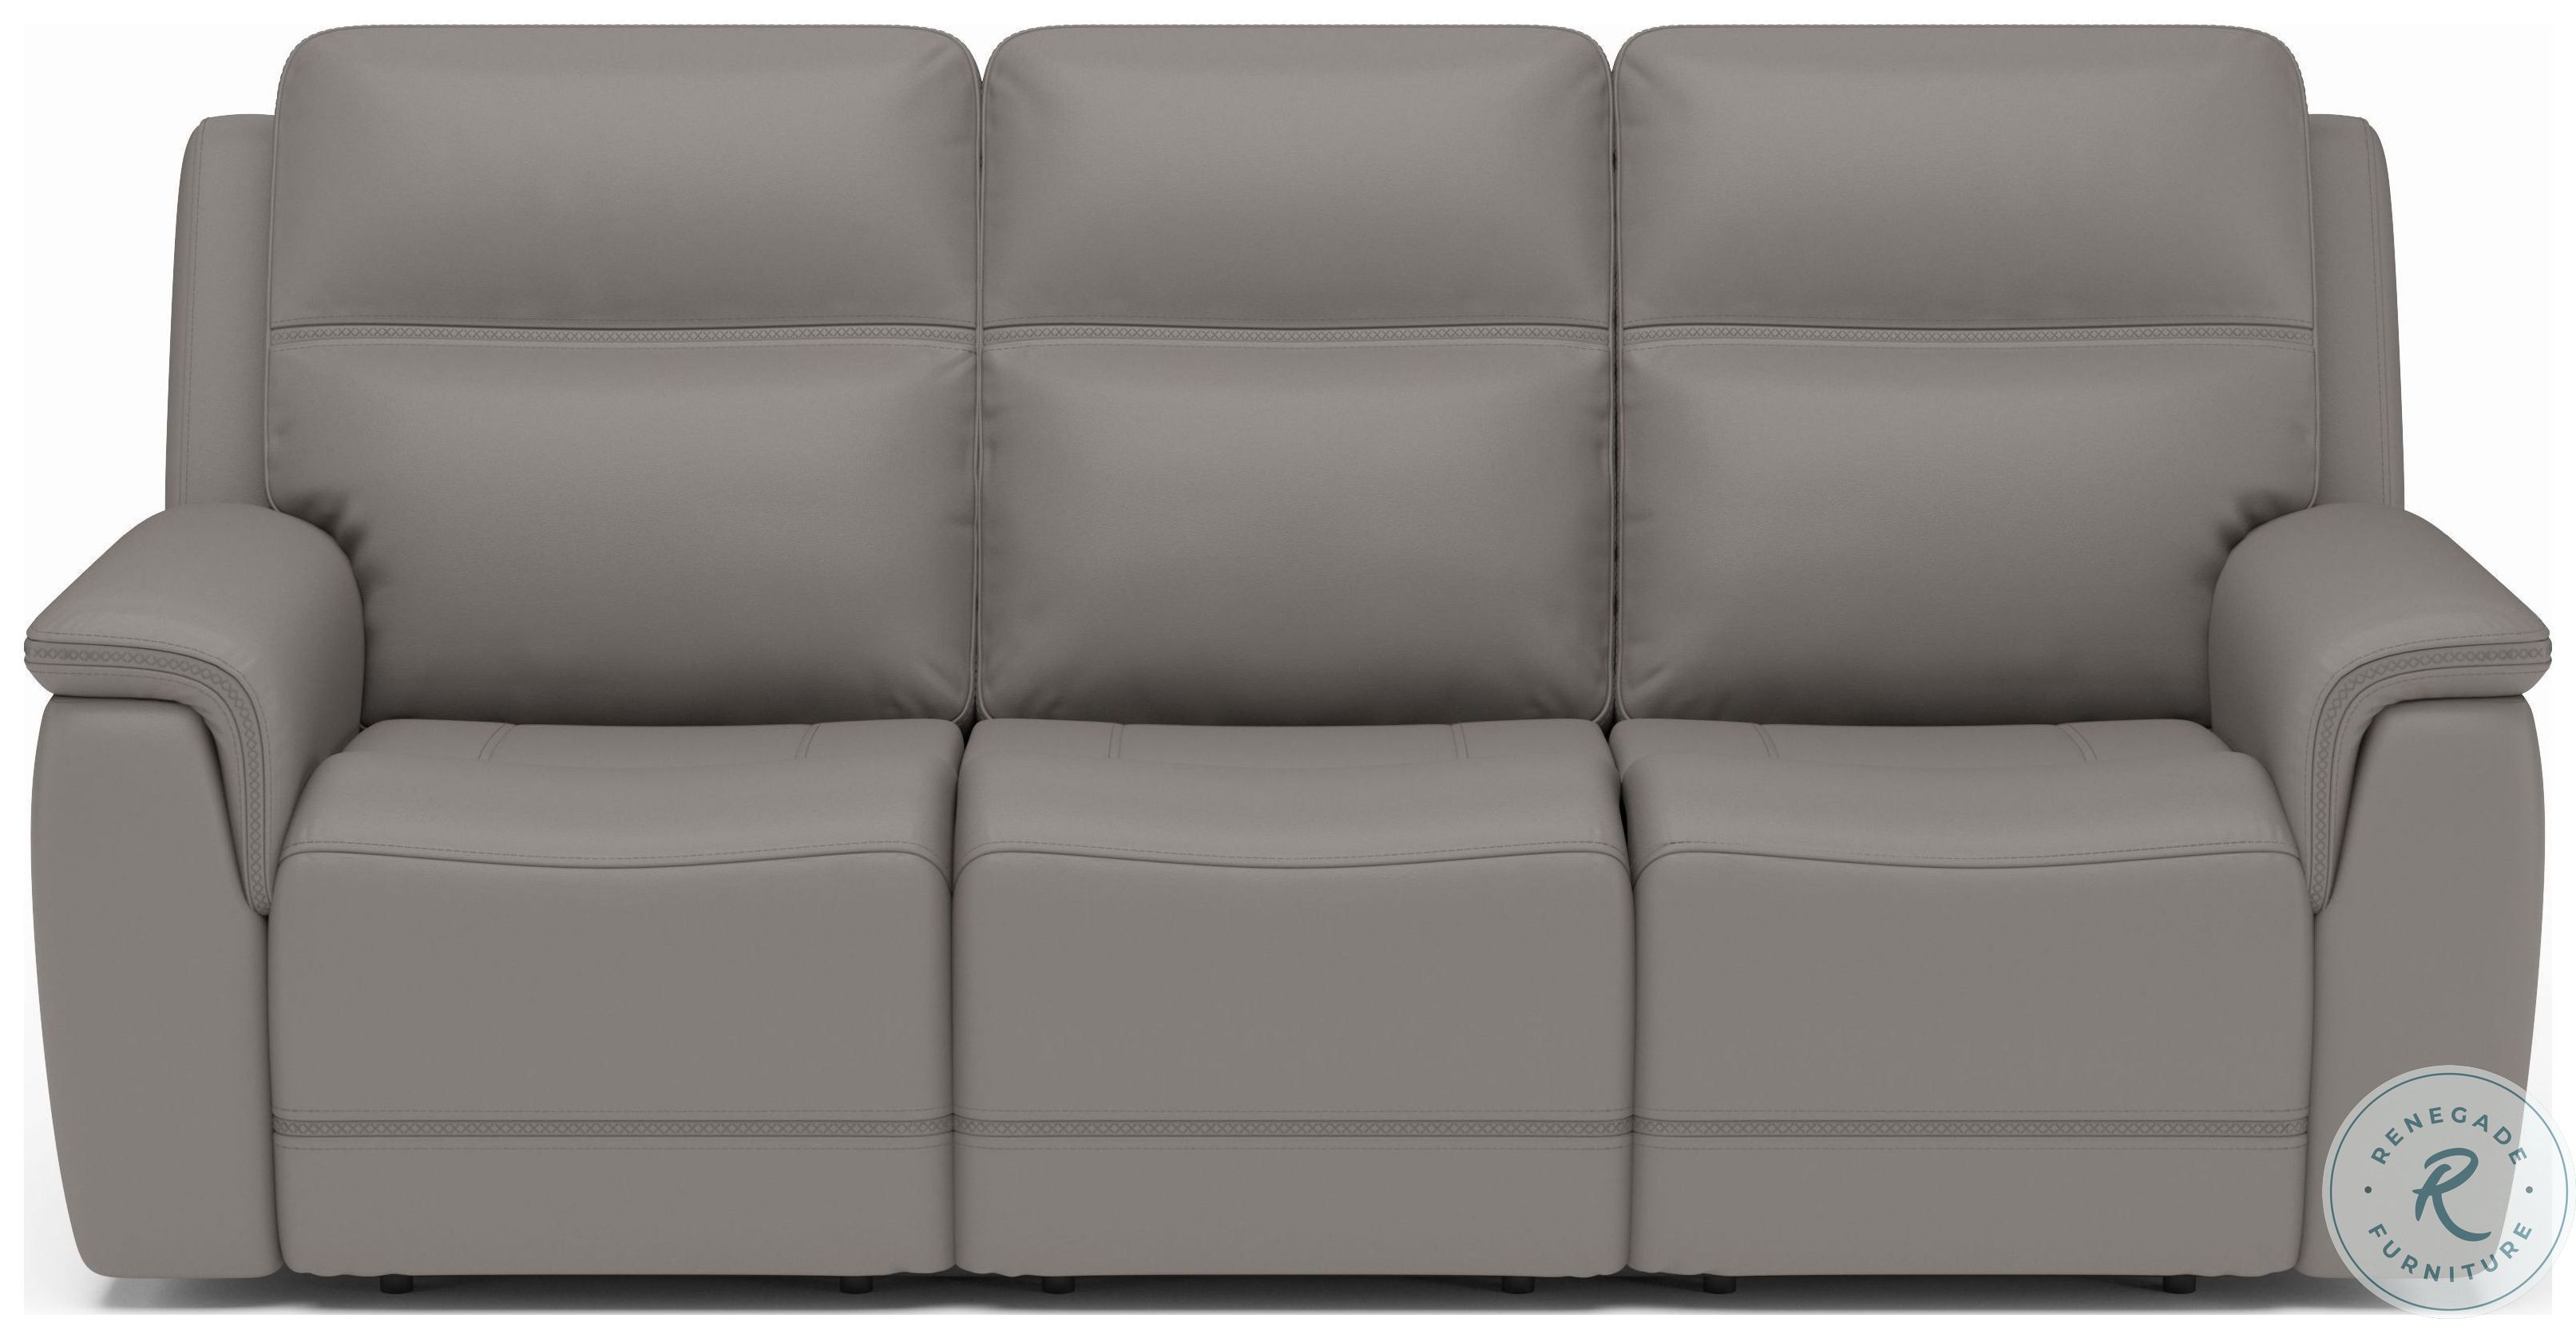 sawyer leather power reclining sofa warranty